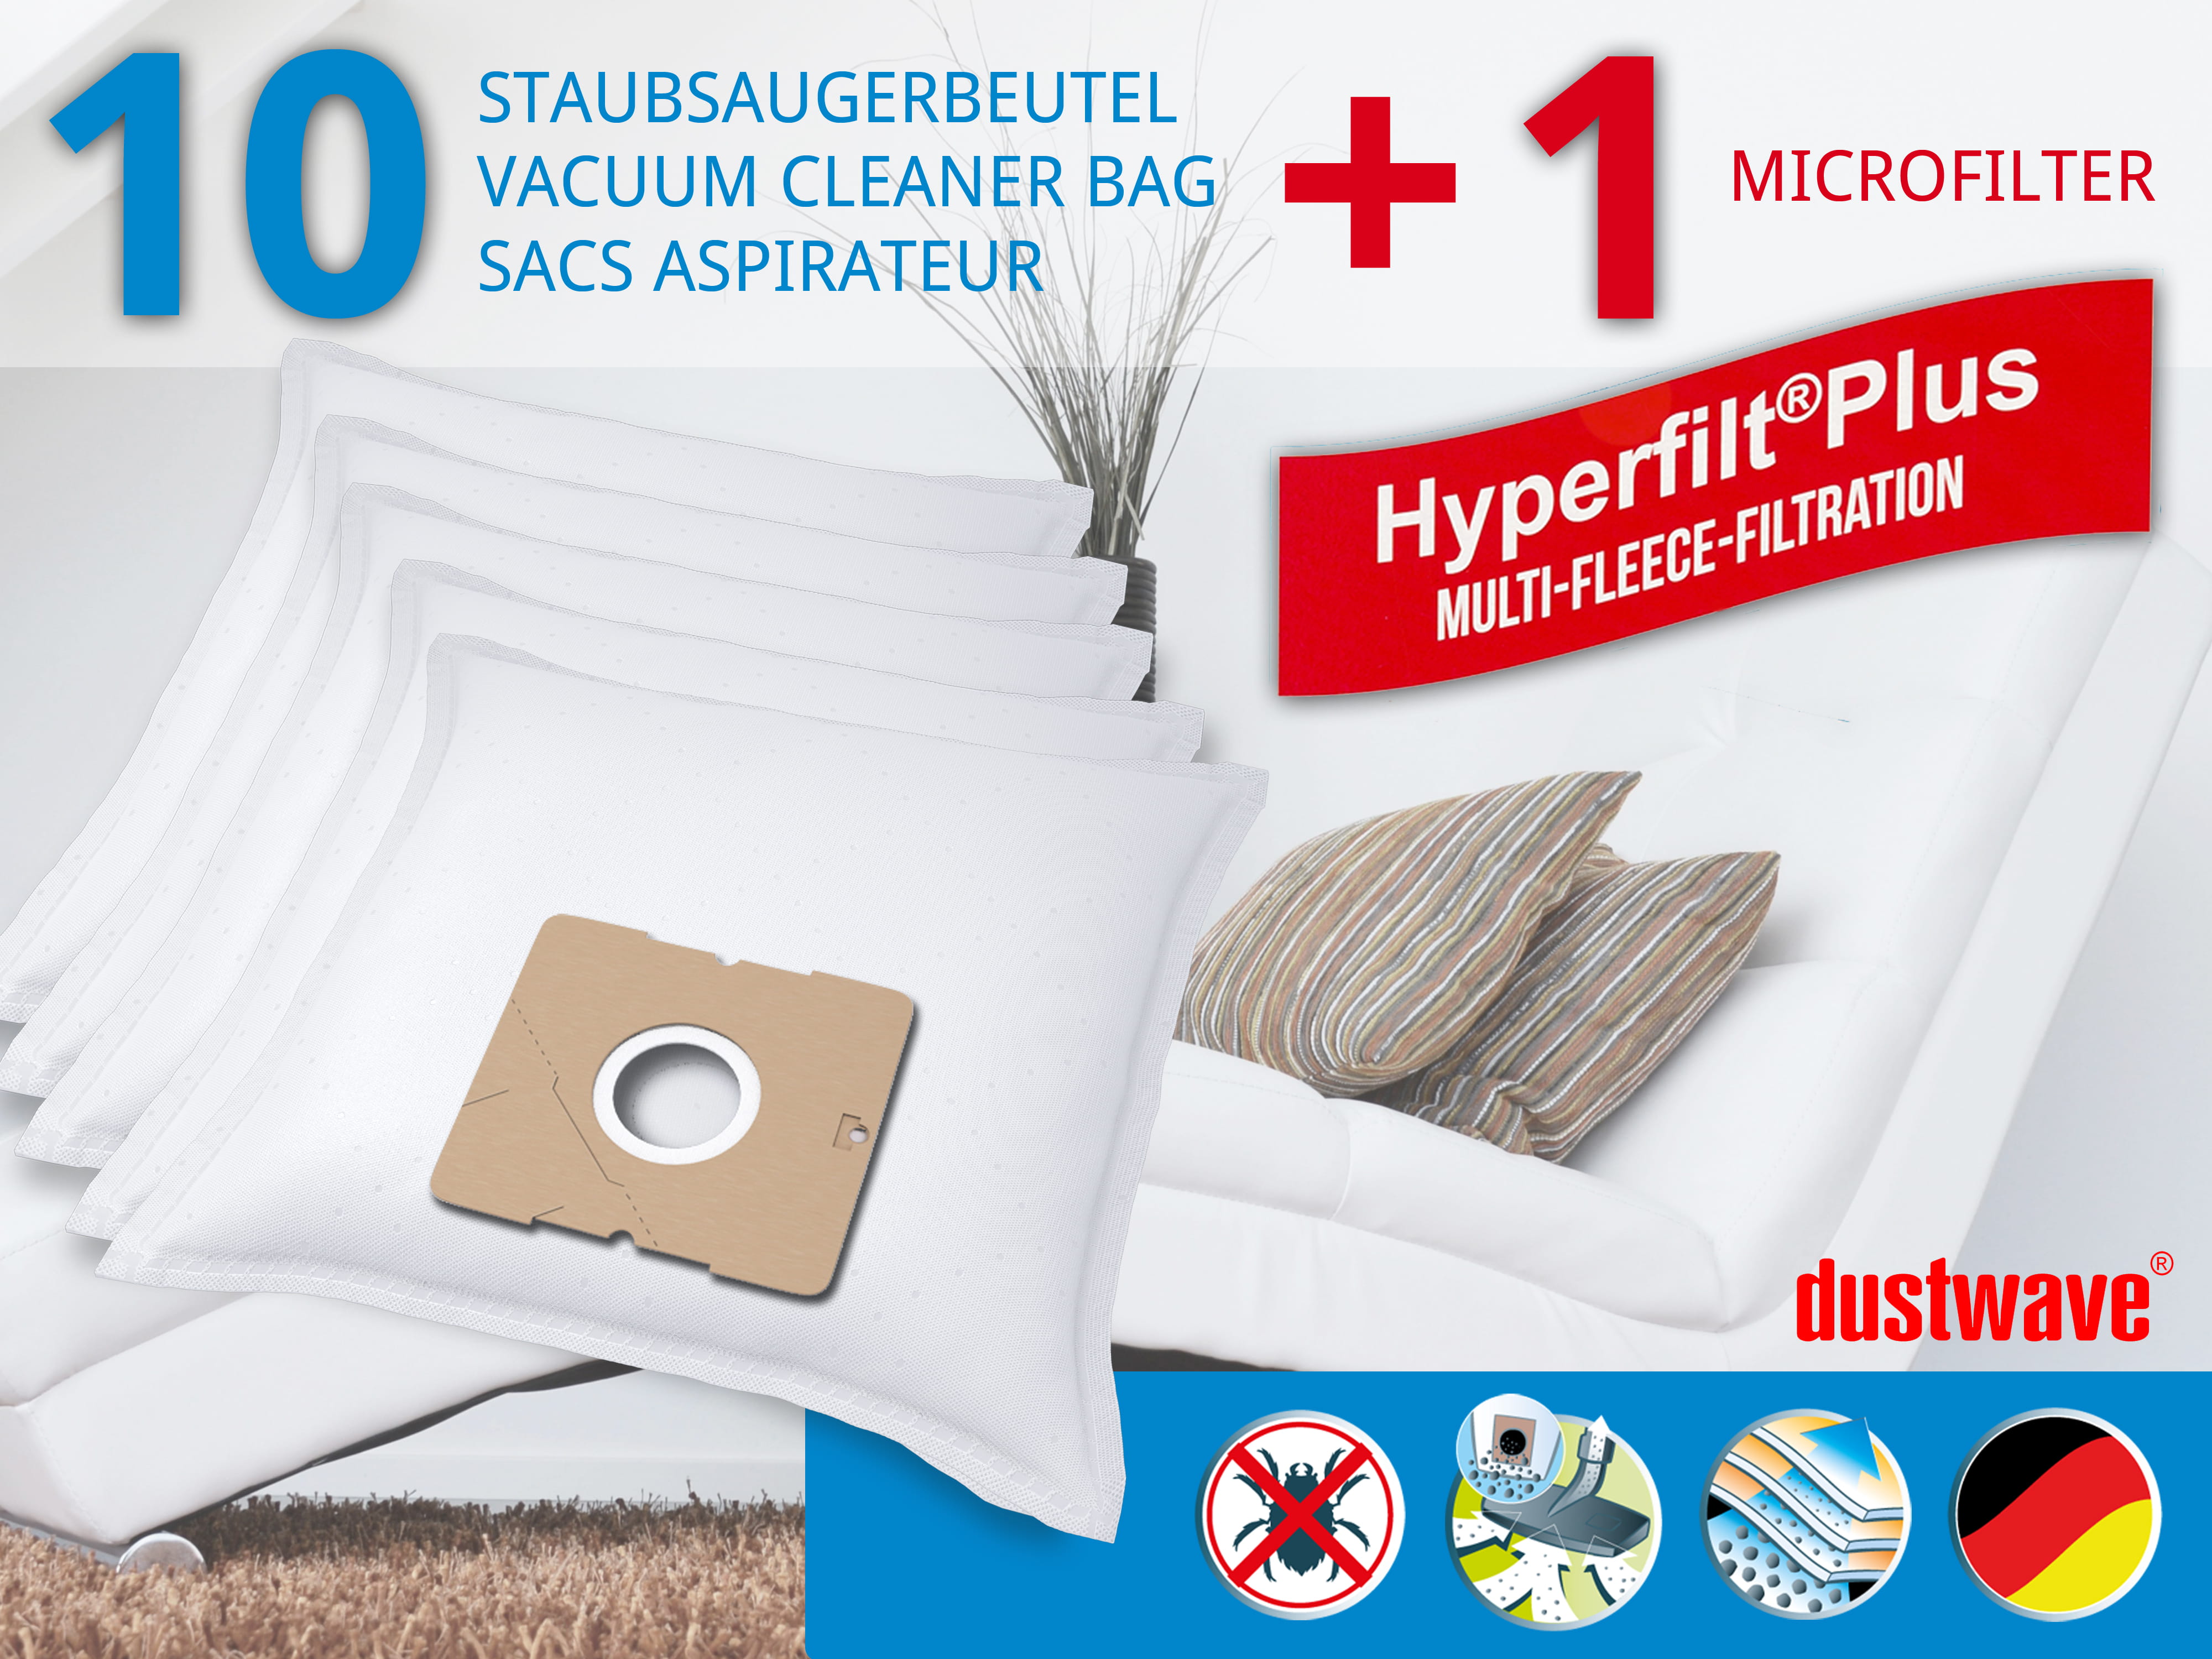 Dustwave® 10 Staubsaugerbeutel für Base BA 1840 - hocheffizient mit Hygieneverschluss - Made in Germany